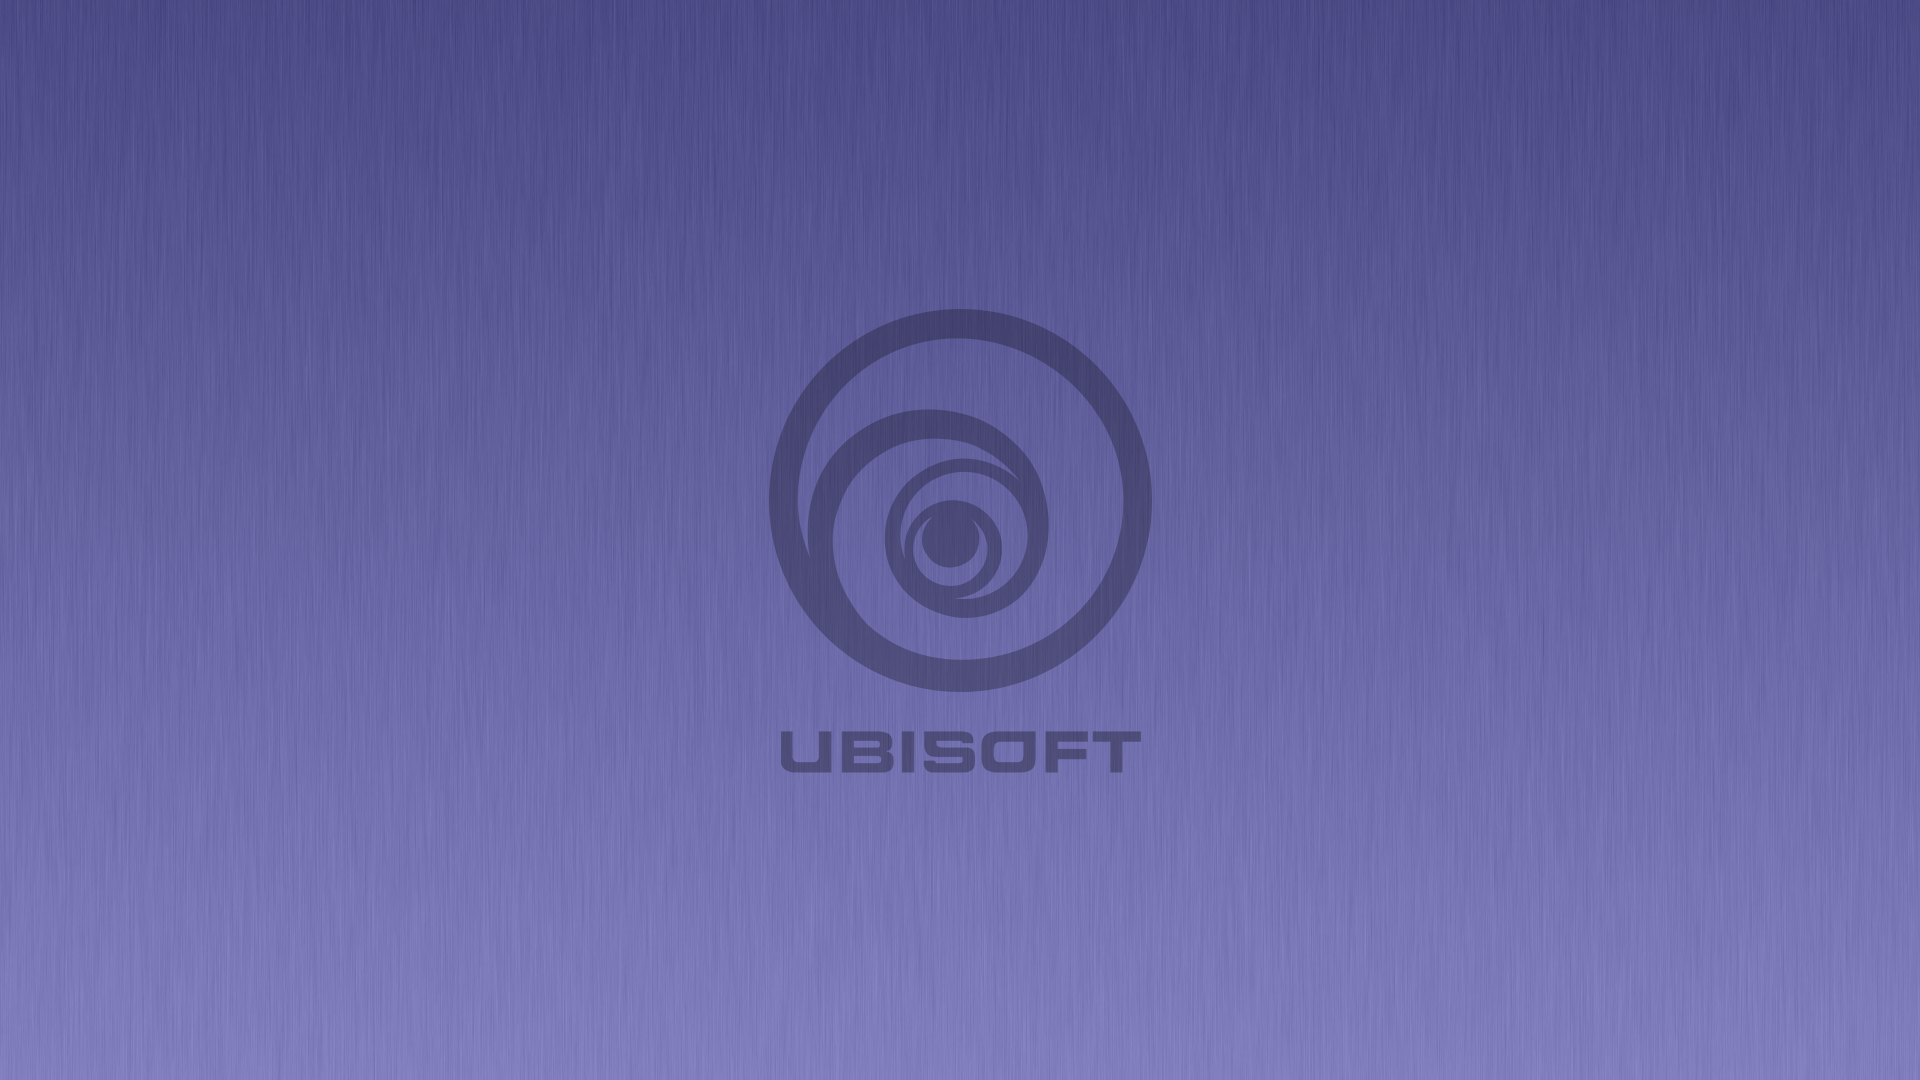 Ubisoft Hyper Scape 4K 8K HD Wallpapers | HD Wallpapers | ID #32286